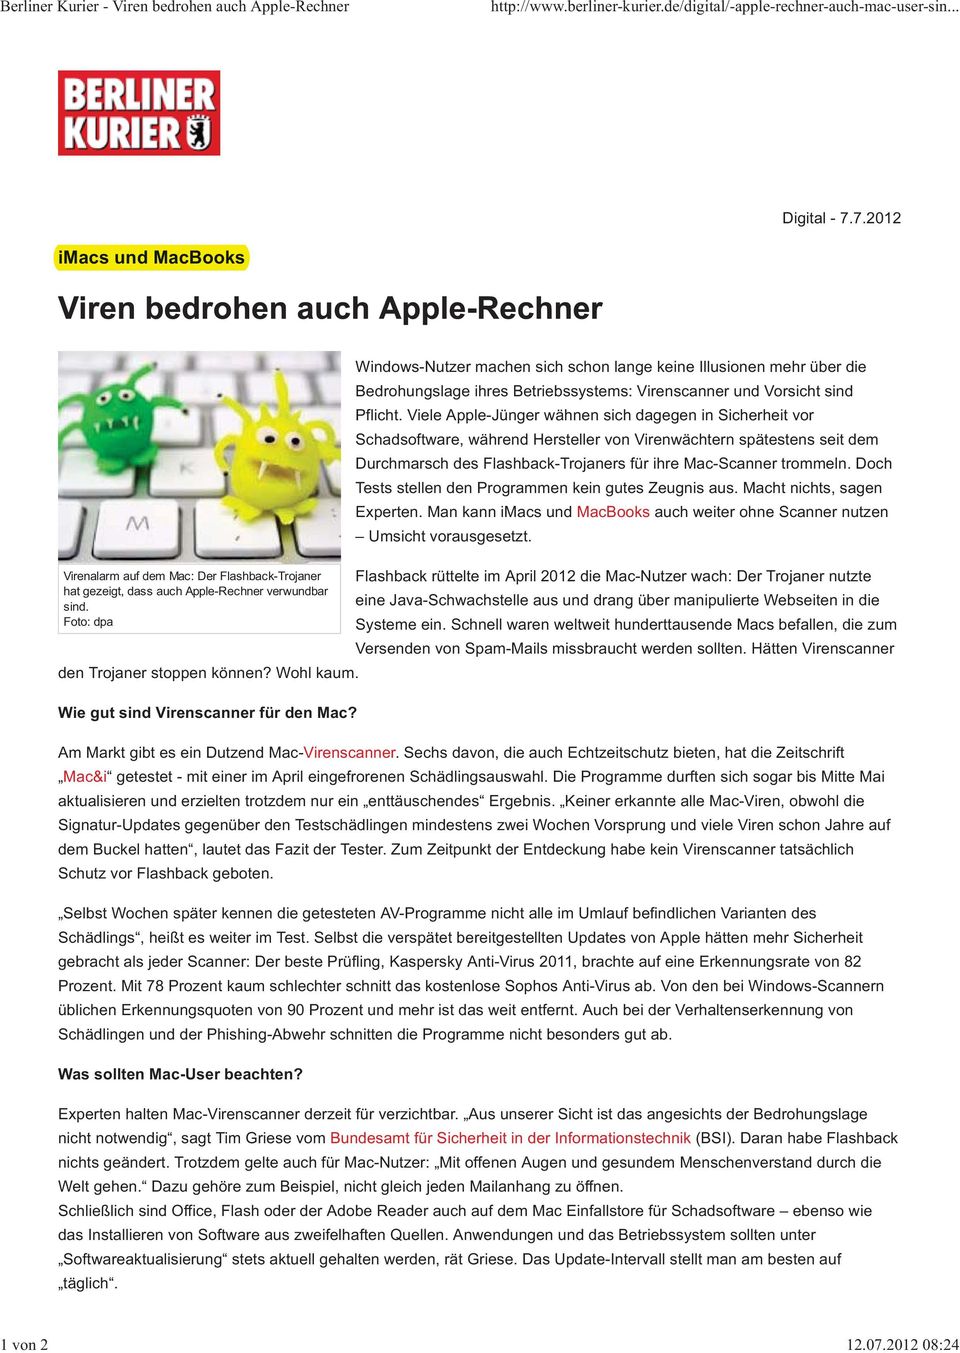 Viele Apple-Jünger wähnen sich dagegen in Sicherheit vor Schadsoftware, während Hersteller von Virenwächtern spätestens seit dem Durchmarsch des Flashback-Trojaners für ihre Mac-Scanner trommeln.